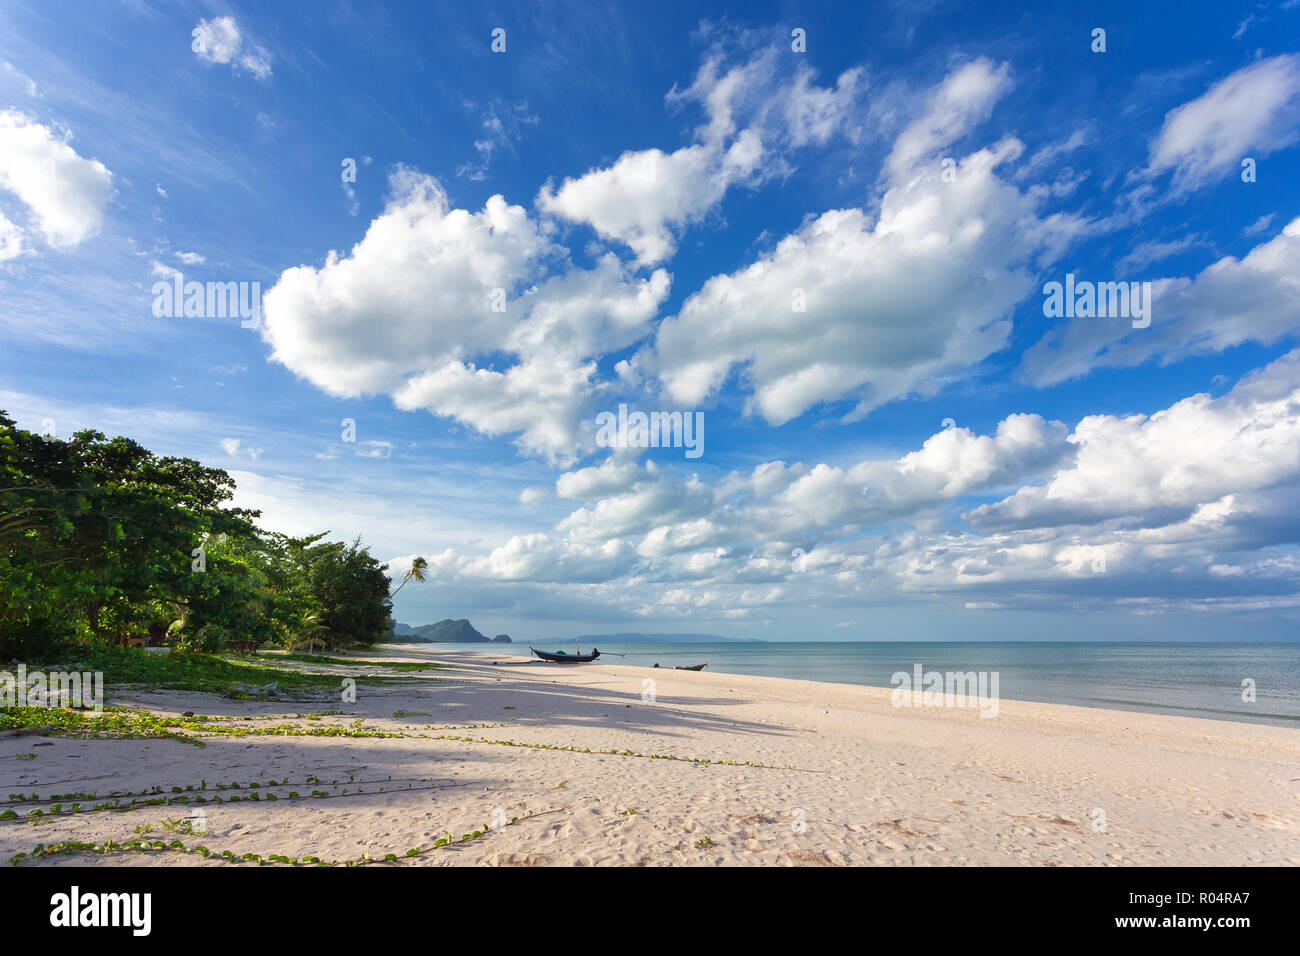 Wild Khanom tropicale spiaggia sotto un blu e il cielo nuvoloso, Thailandia Foto Stock